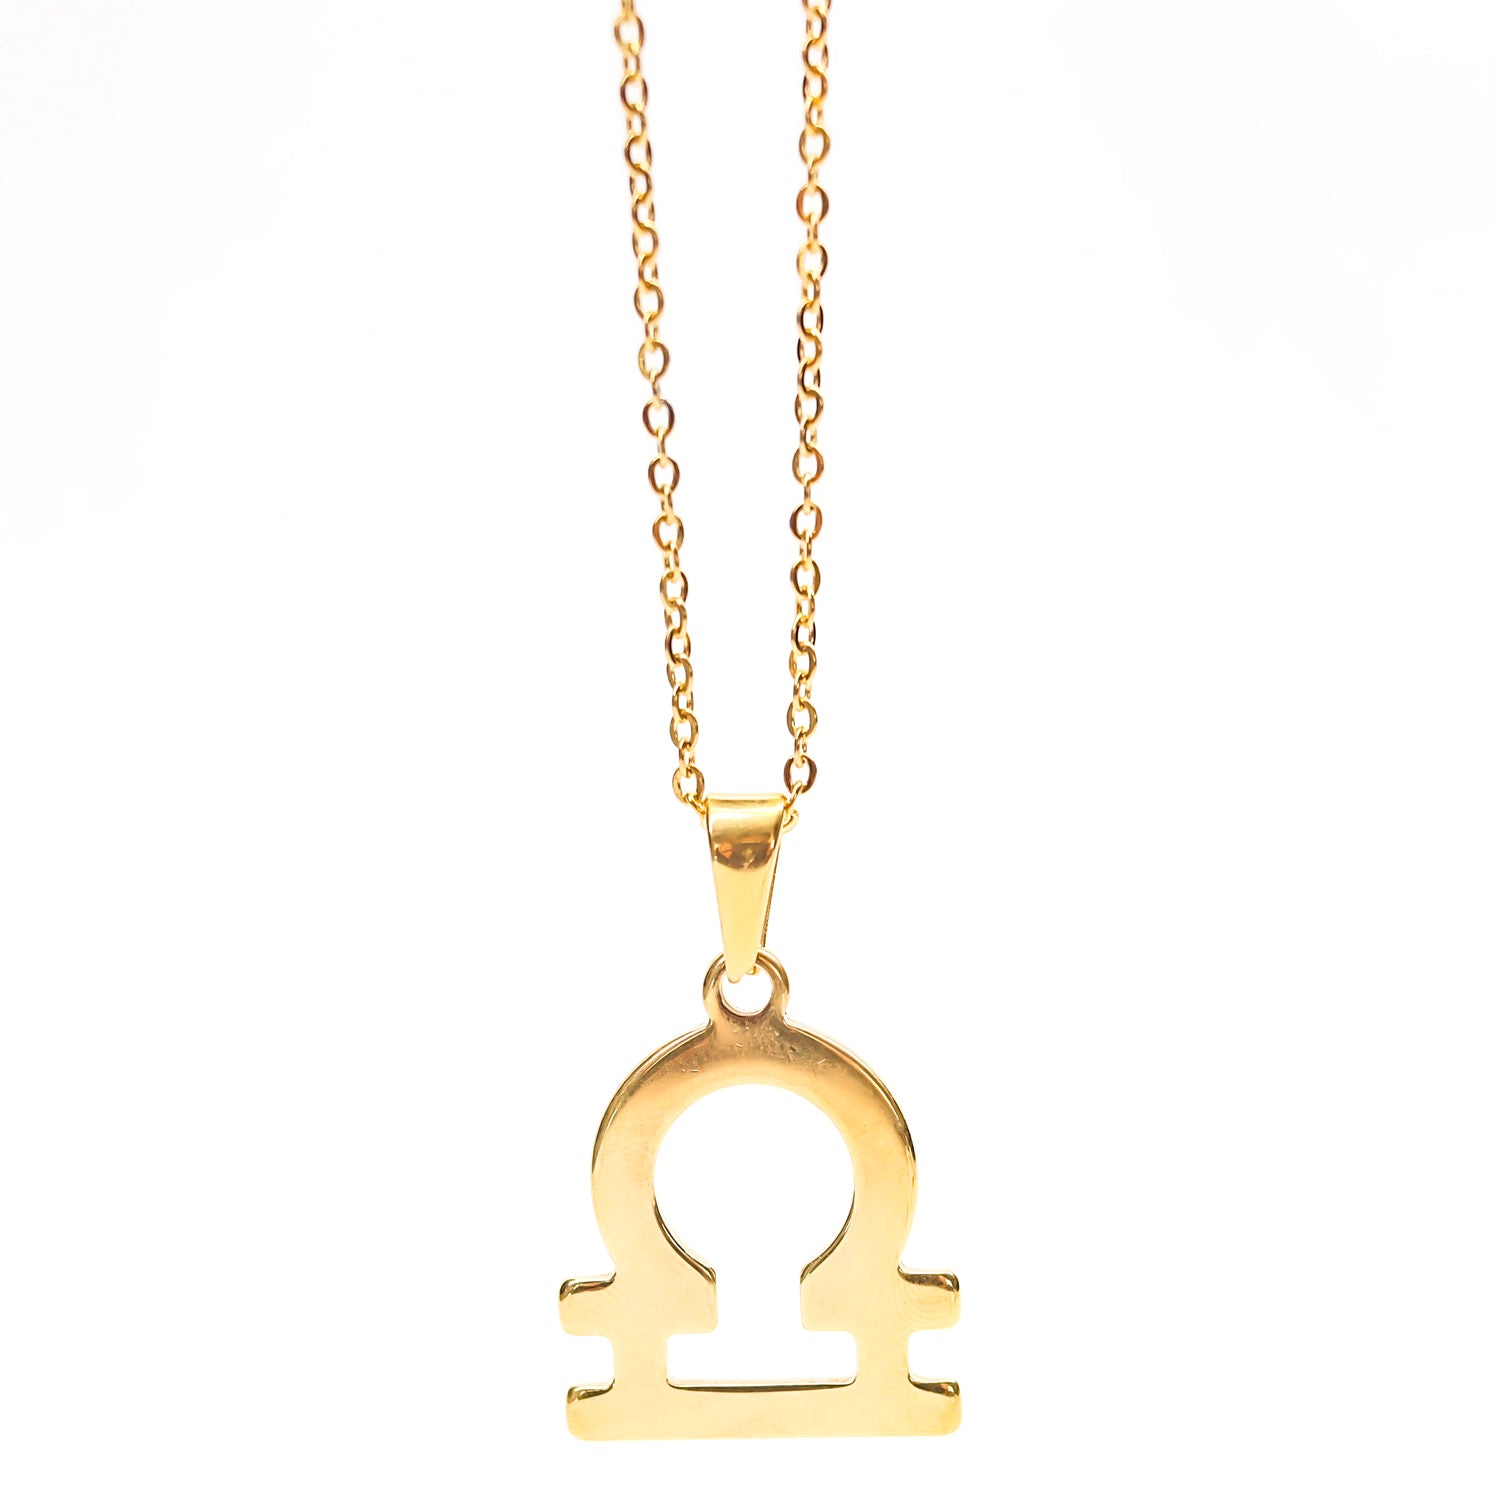 Colgante de acero inoxidable dorado con forma del signo del zodiaco Libra de 28mm